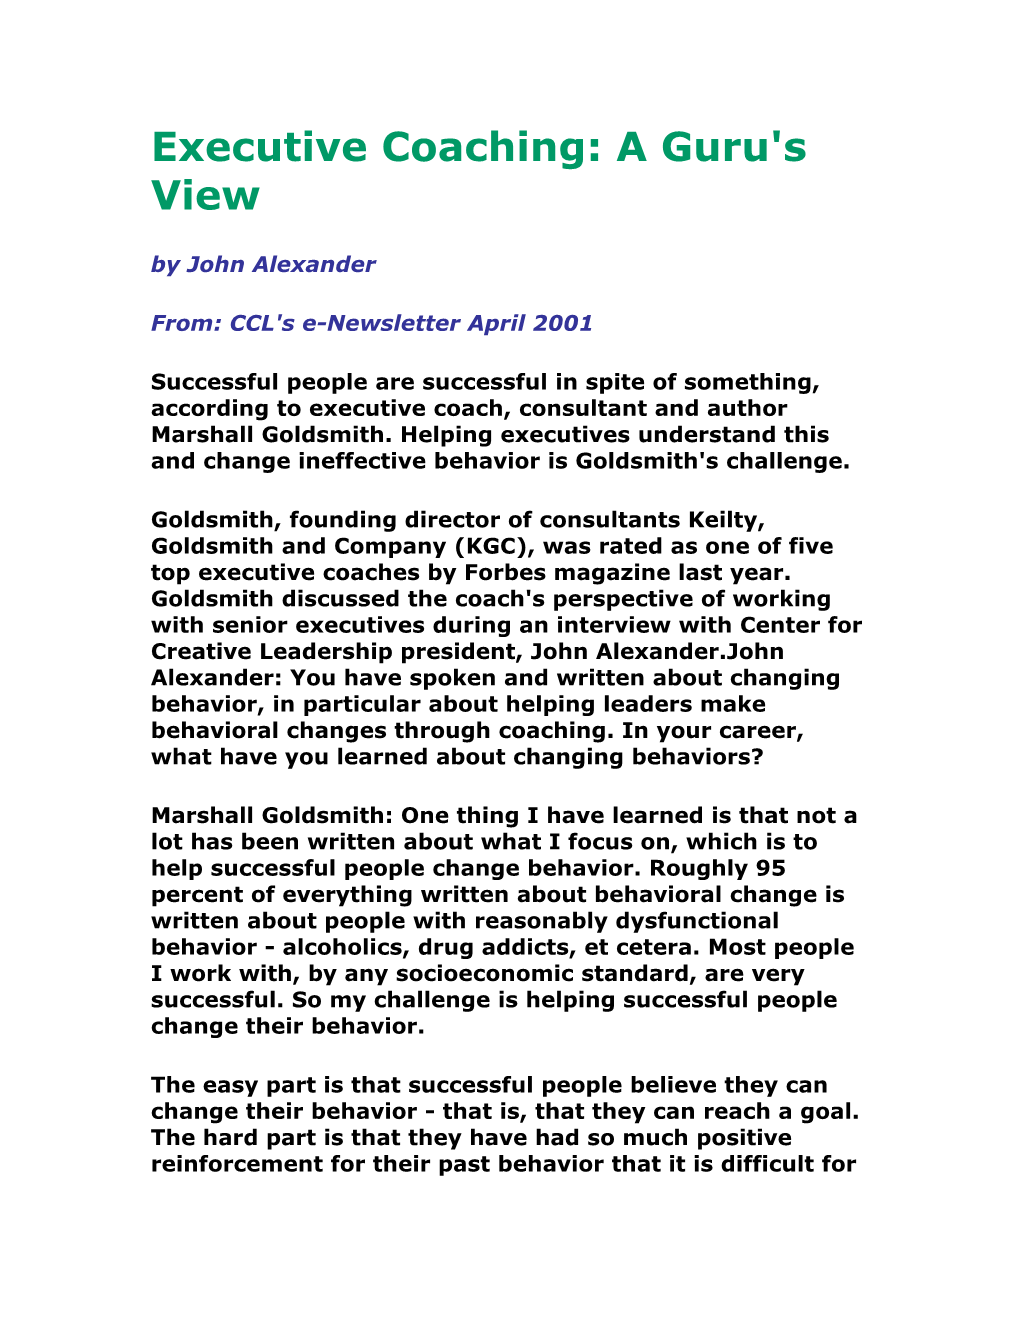 Executive Coaching: a Guru's View